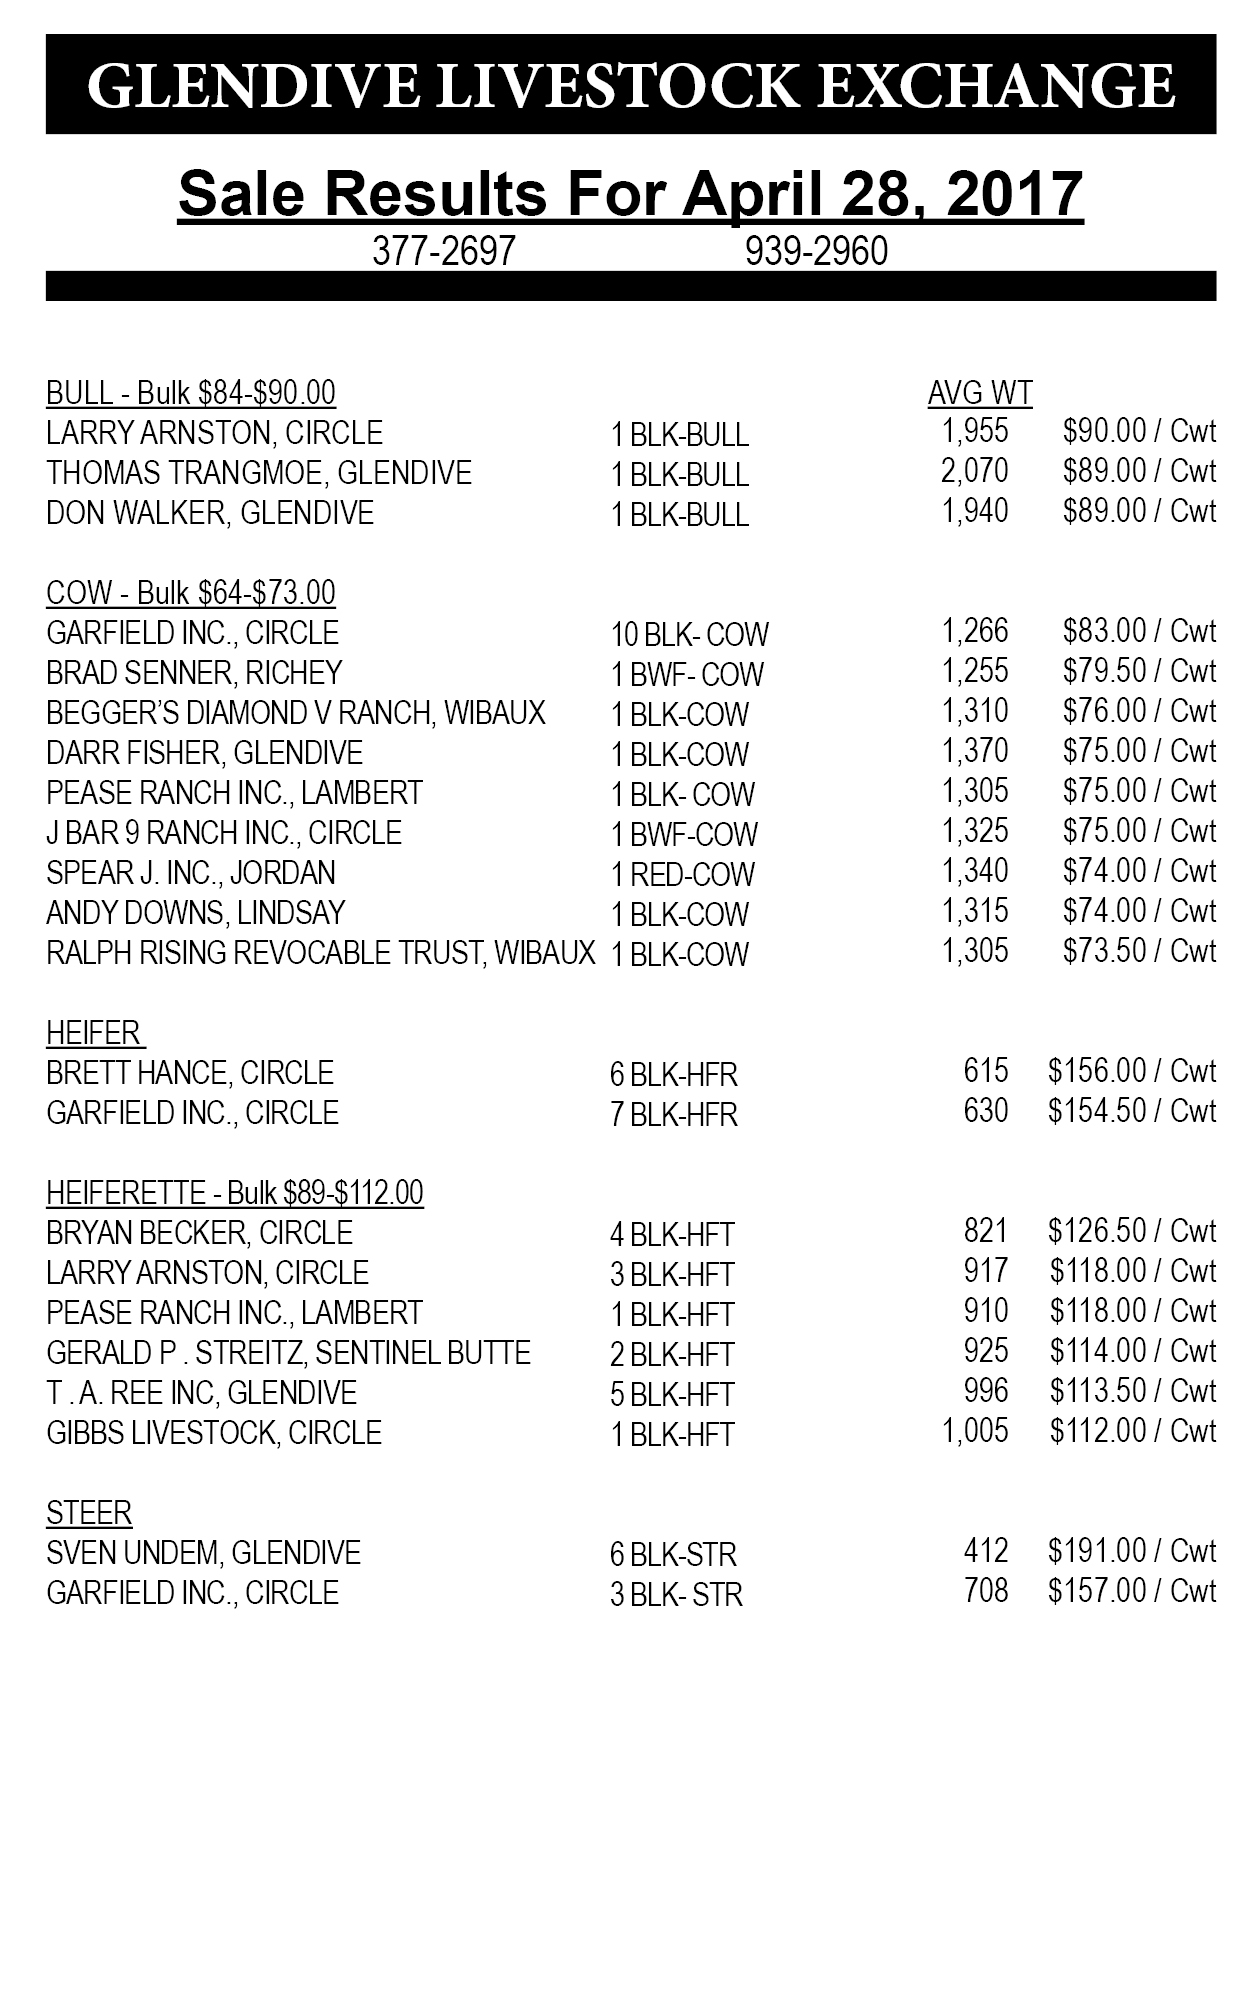 Glendive Livestock sale results April 28, 2017